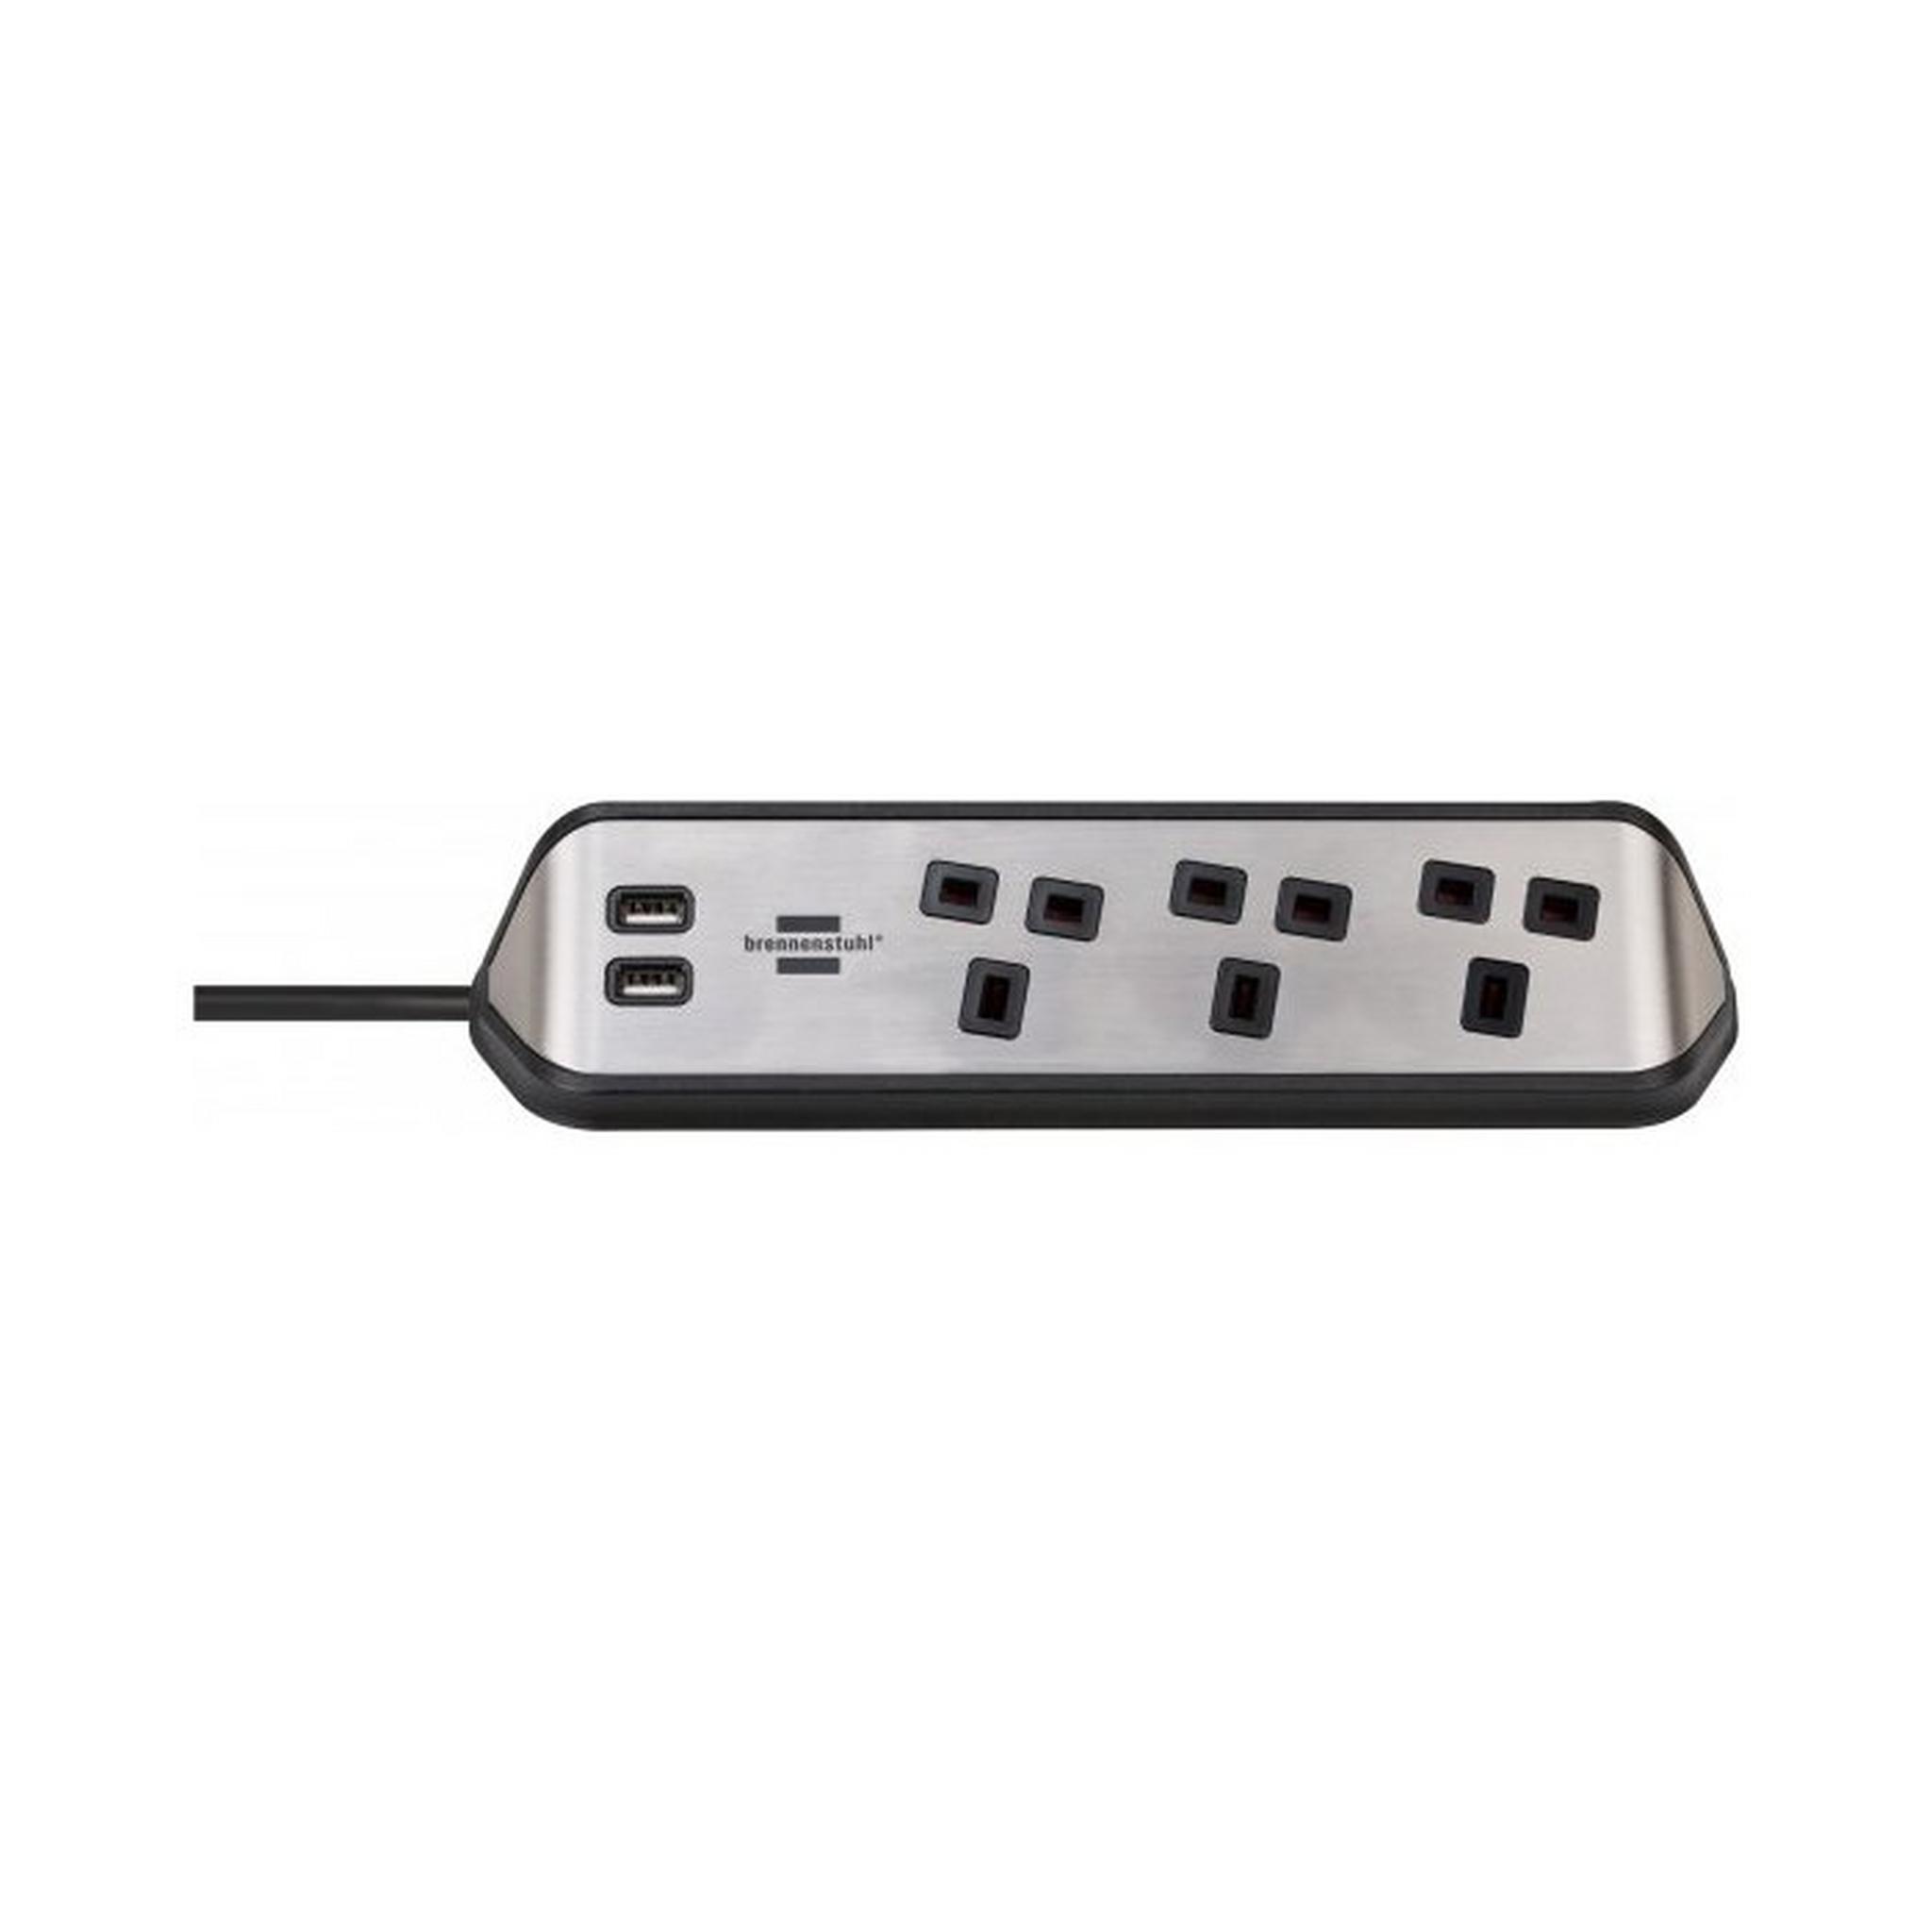 BRENNENSTUHL 3 Sockets Power Extension, 2M, 2 USB Ports, 1153593410 - Silver/ Black